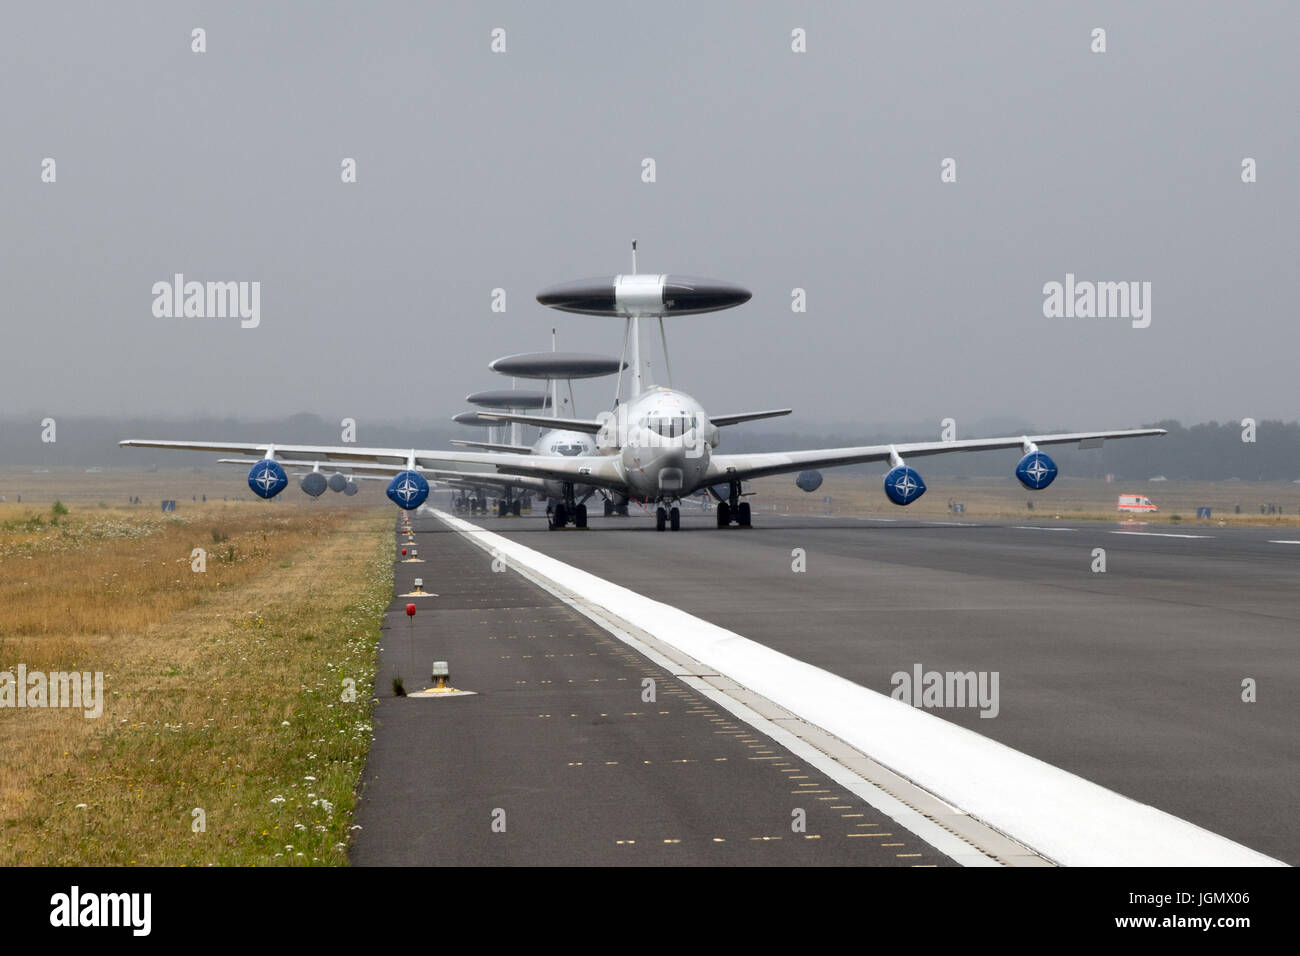 GEILENKIRCHEN, Deutschland - 2. Juli 2017: Zeile der NATO Boeing e-3 Sentry AWACS Radar Flugzeuge auf der Landebahn des Flugplatzes Geilenkirchen. Stockfoto